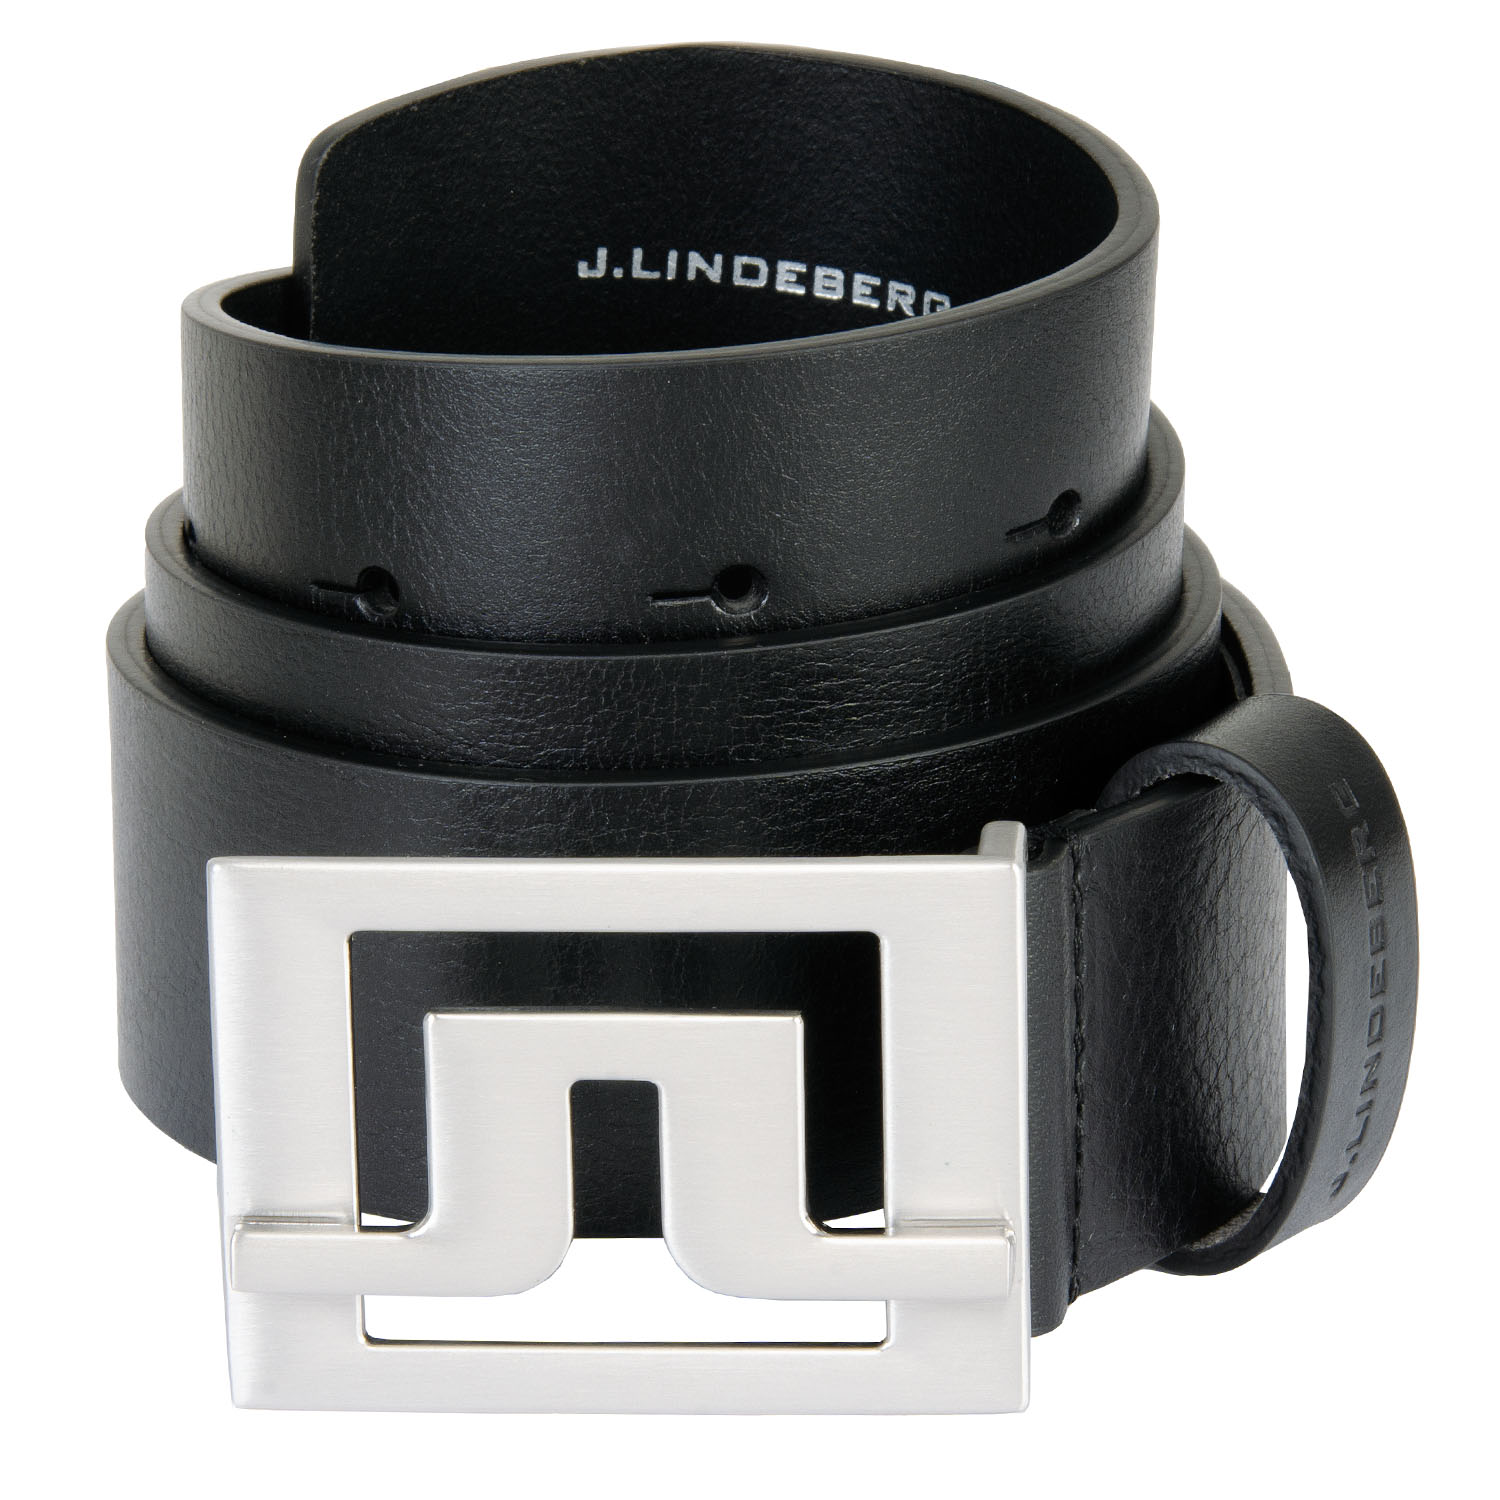 Image of J Lindeberg Slater 40 Leather Belt